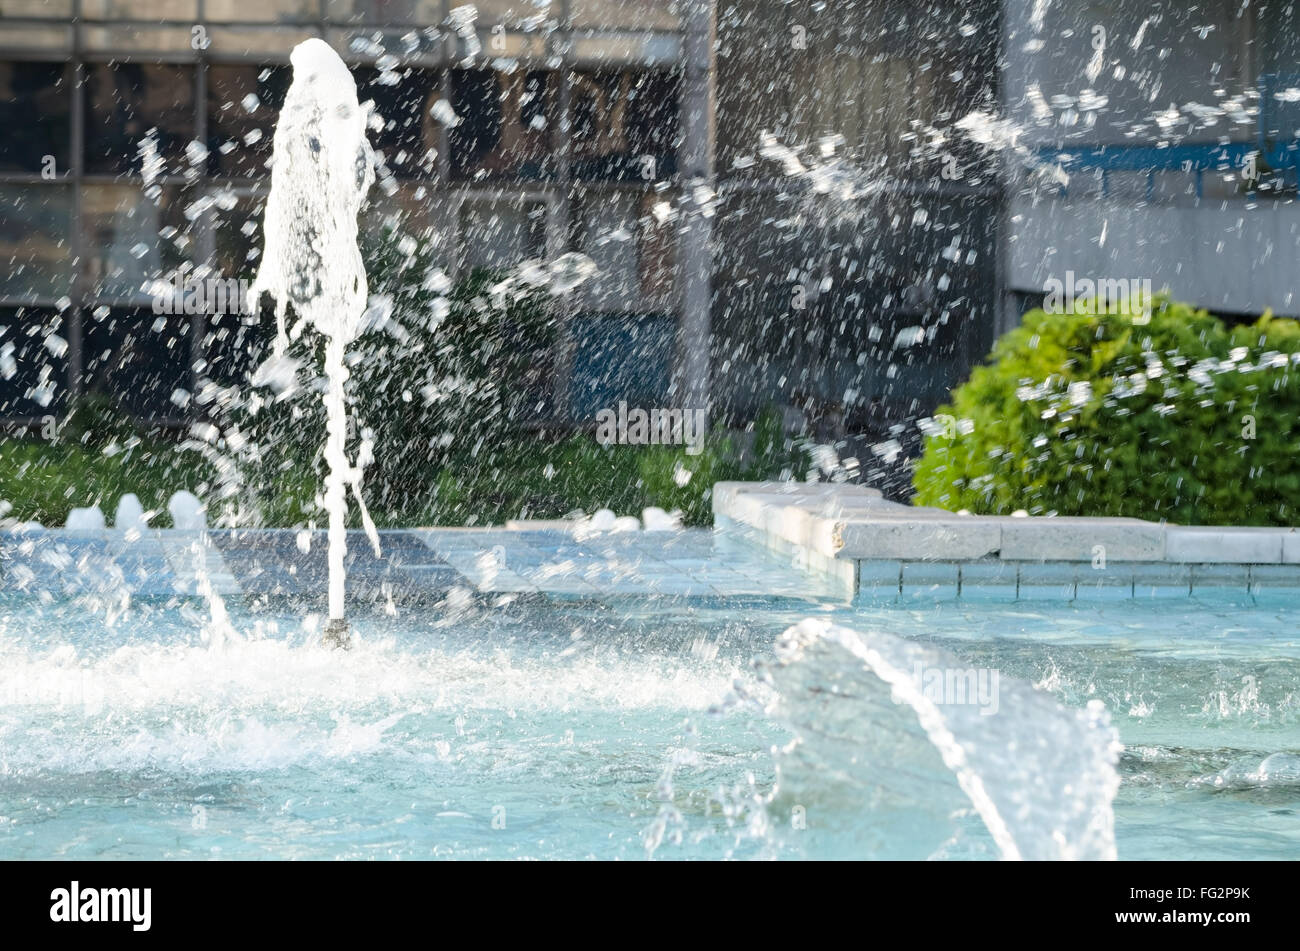 Les projections d'eau dans la Fontaine de la ville de jour à l'été Banque D'Images